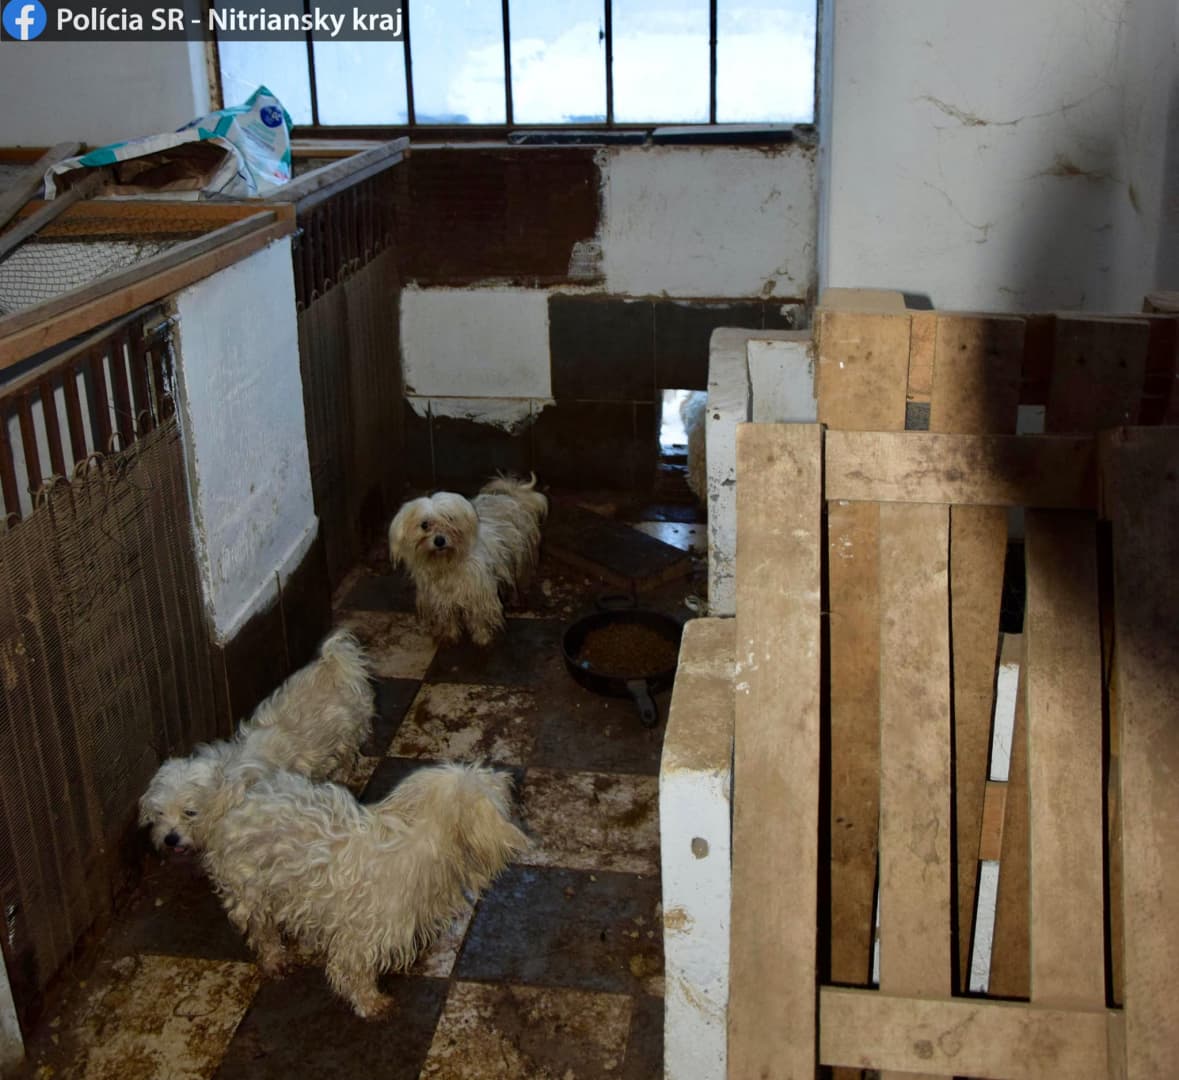 Illegális kutyatenyészetet számoltak fel a Komáromi járásban, borzalmas körülmények között tartották a négylábúakat (FOTÓK)